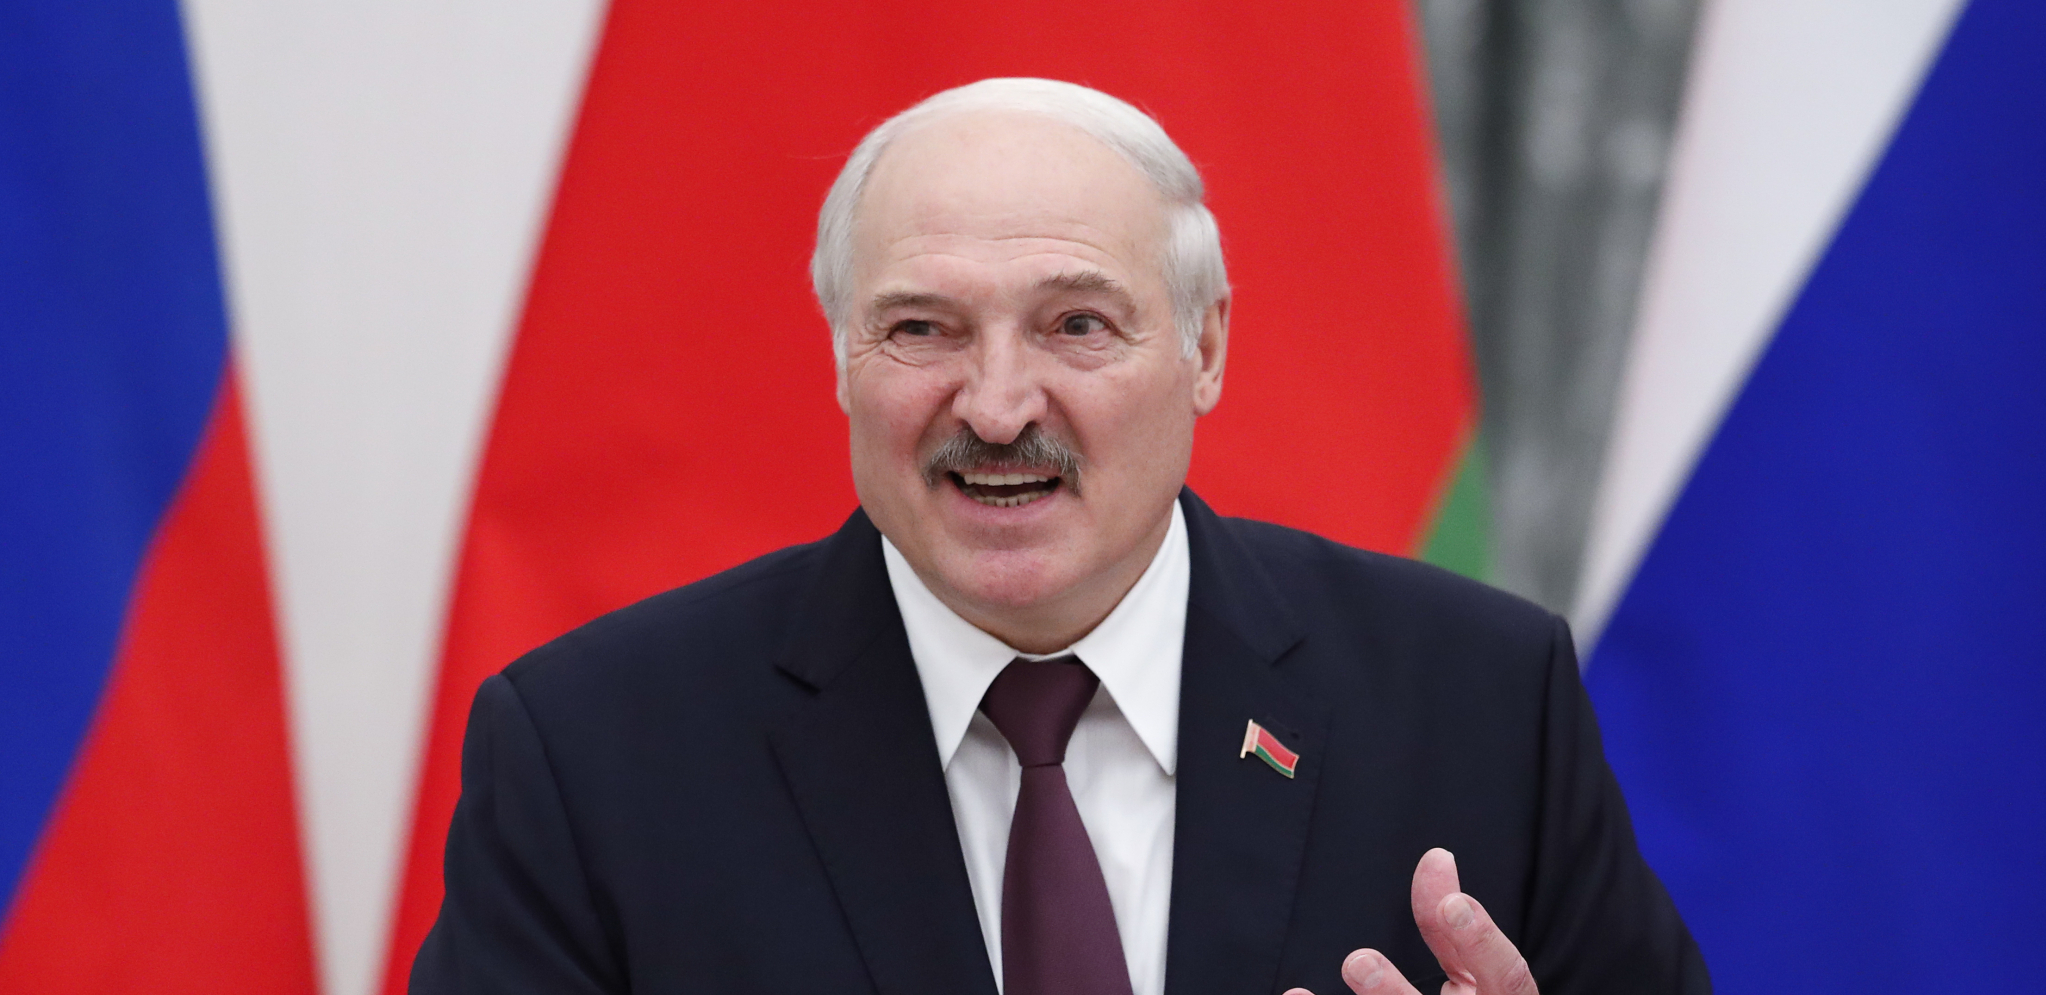 RUSKI LANAC RESTORANA ZAMENIO AMERIČKI Lukašenko: Hvala Bogu što odlazi!